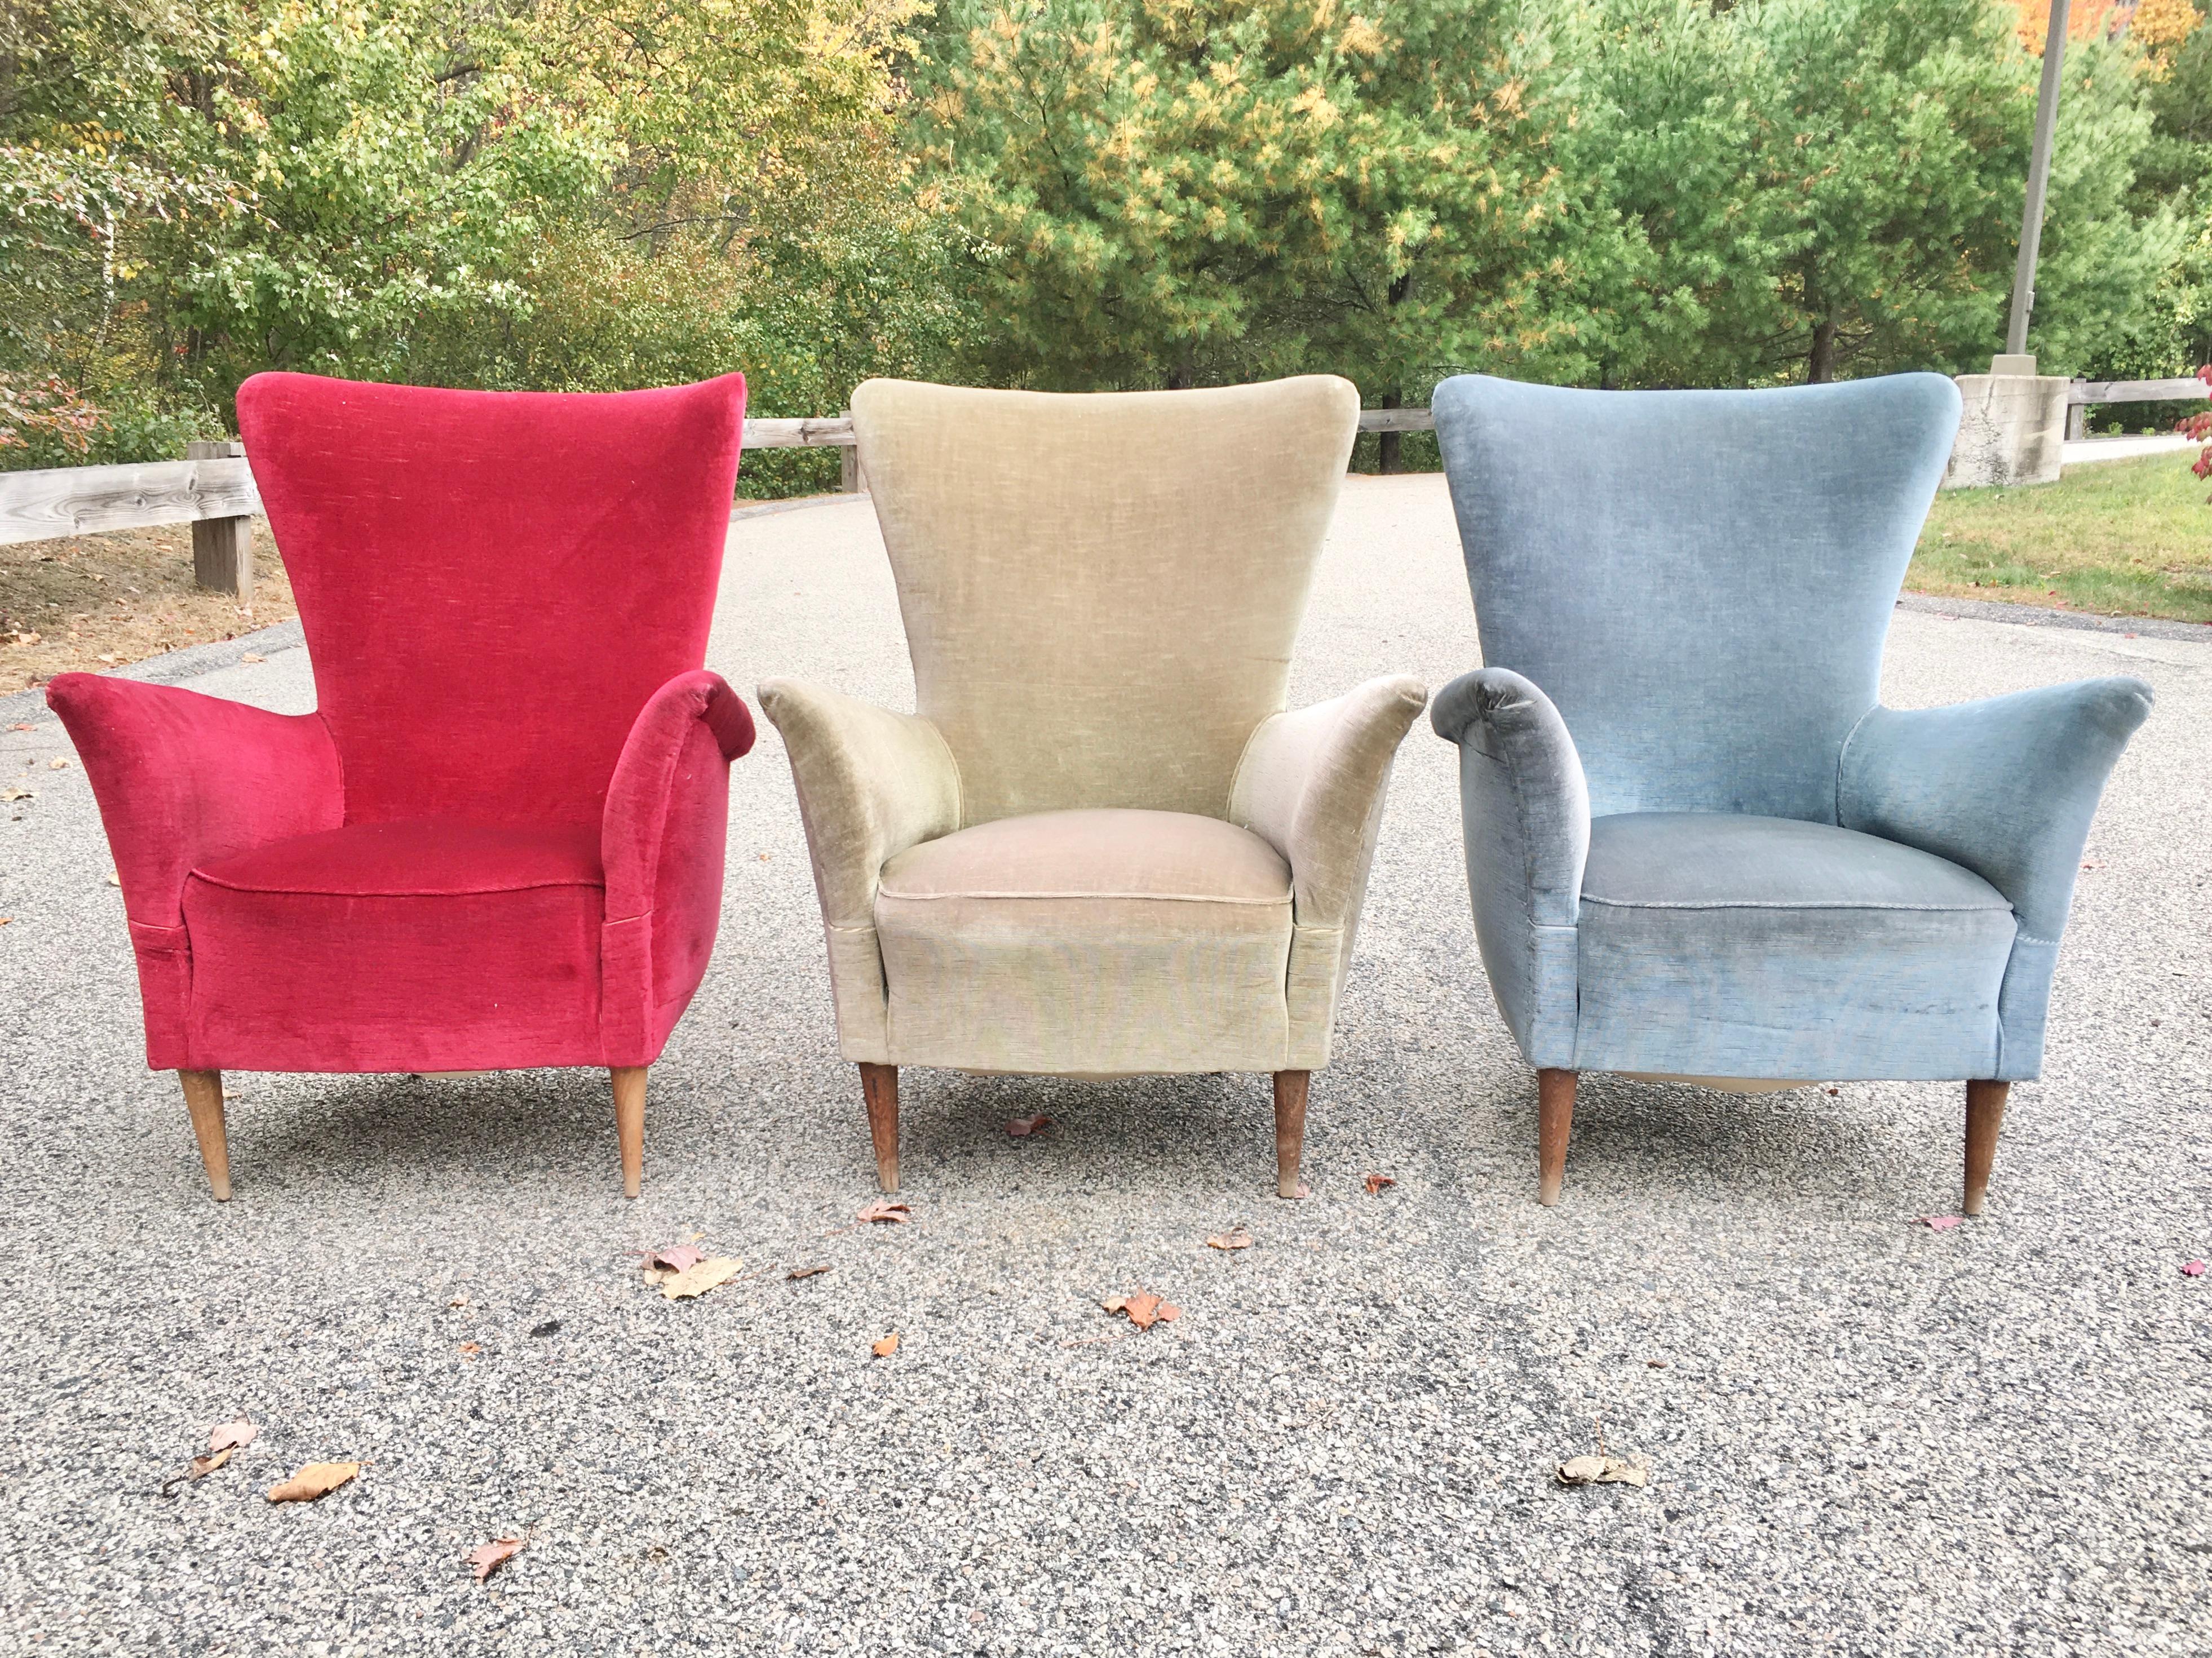 Drei unglaublich stilvolle italienische Sessel aus den 1950er Jahren, die den Entwürfen von Gio Ponti für das Hotel Bristol di Merano sehr ähnlich sind. Original handgenähter Samt in gutem Zustand. Konisch zulaufende Beine aus massivem Nussbaumholz.